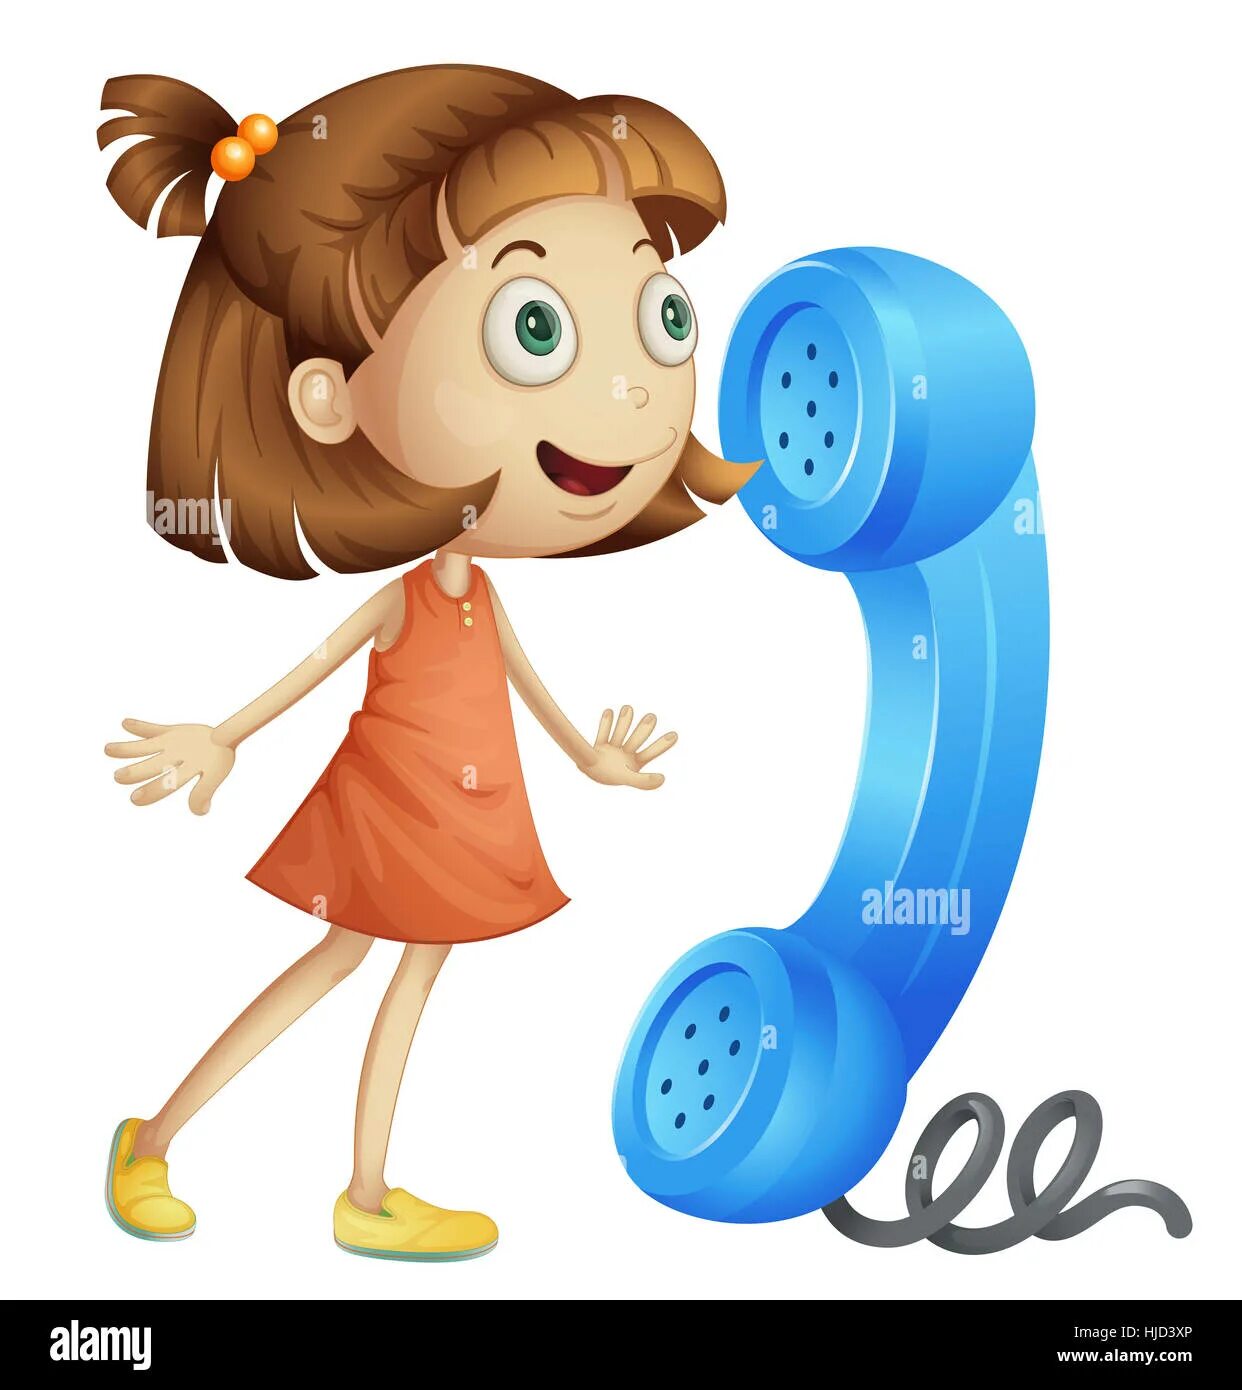 Але але алена кричу я. Девочка с телефонной трубкой. Ребенок с телефонной трубкой. Телефонная трубка детская. Телефон картинка для детей.